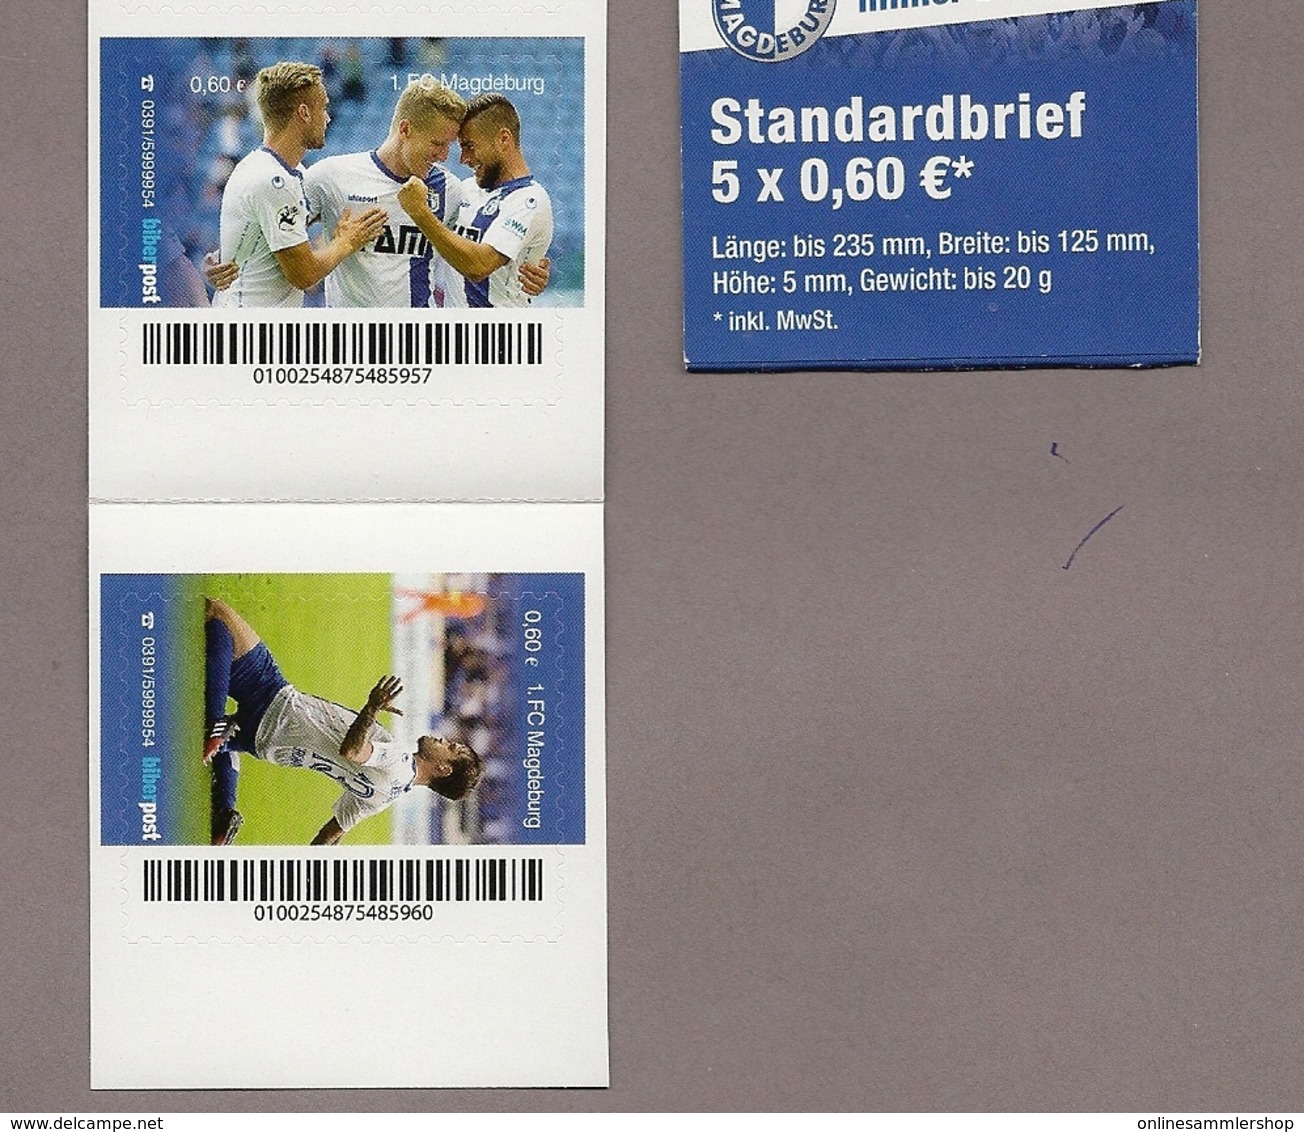 Privatpost- Biberpost - Markenheft Booklet - Fußball Fútbol Soccer Football - 1. FC Magdeburg - 1. FCM - Aufstieg - 5 W - Ungebraucht